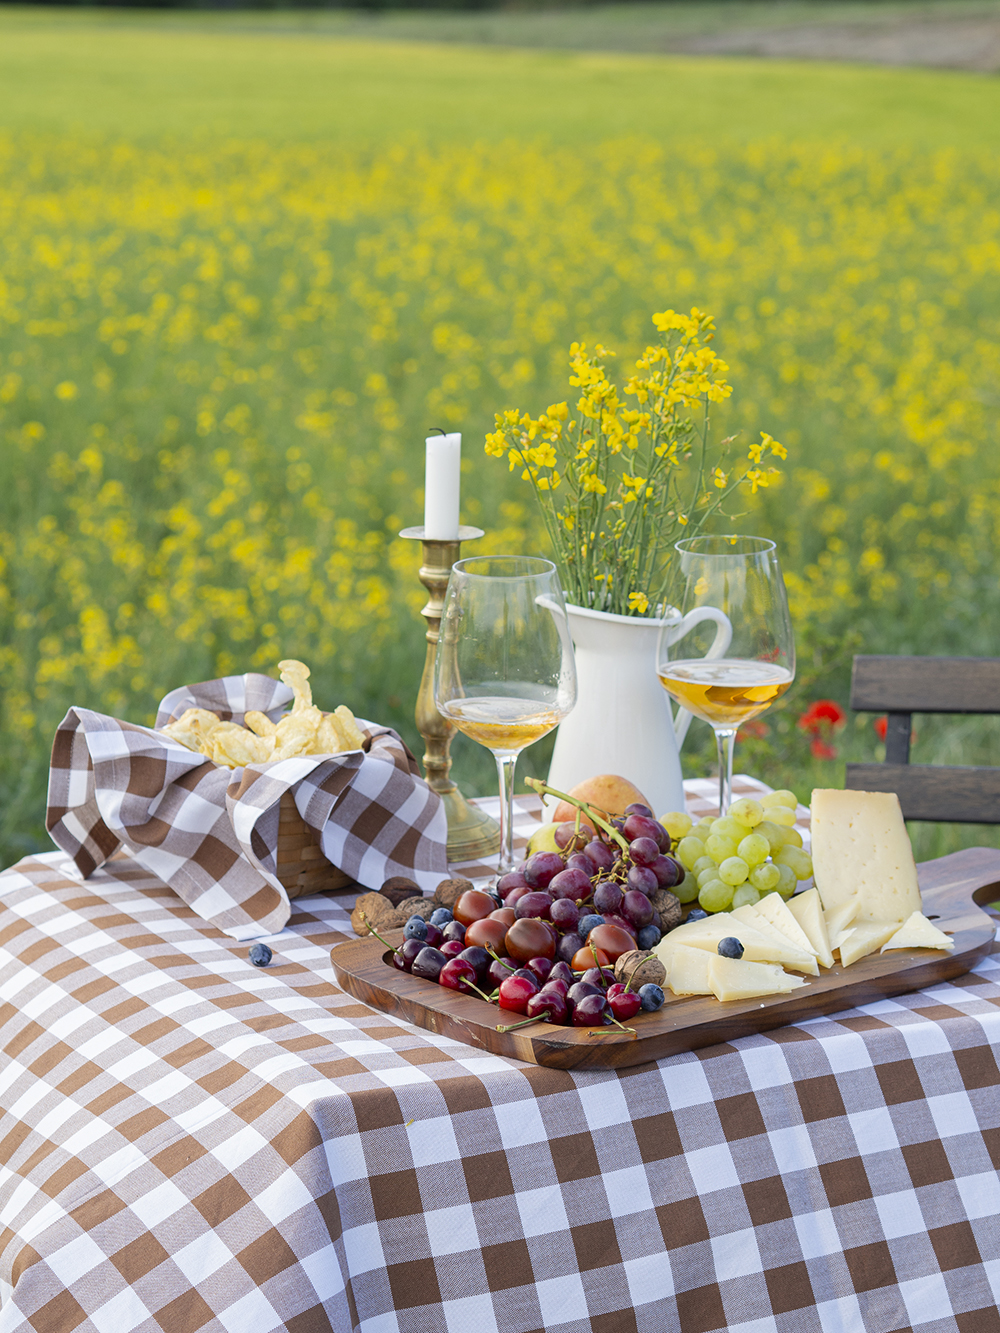 Una mesa campestre entre campos de colza para celebrar el amor_8